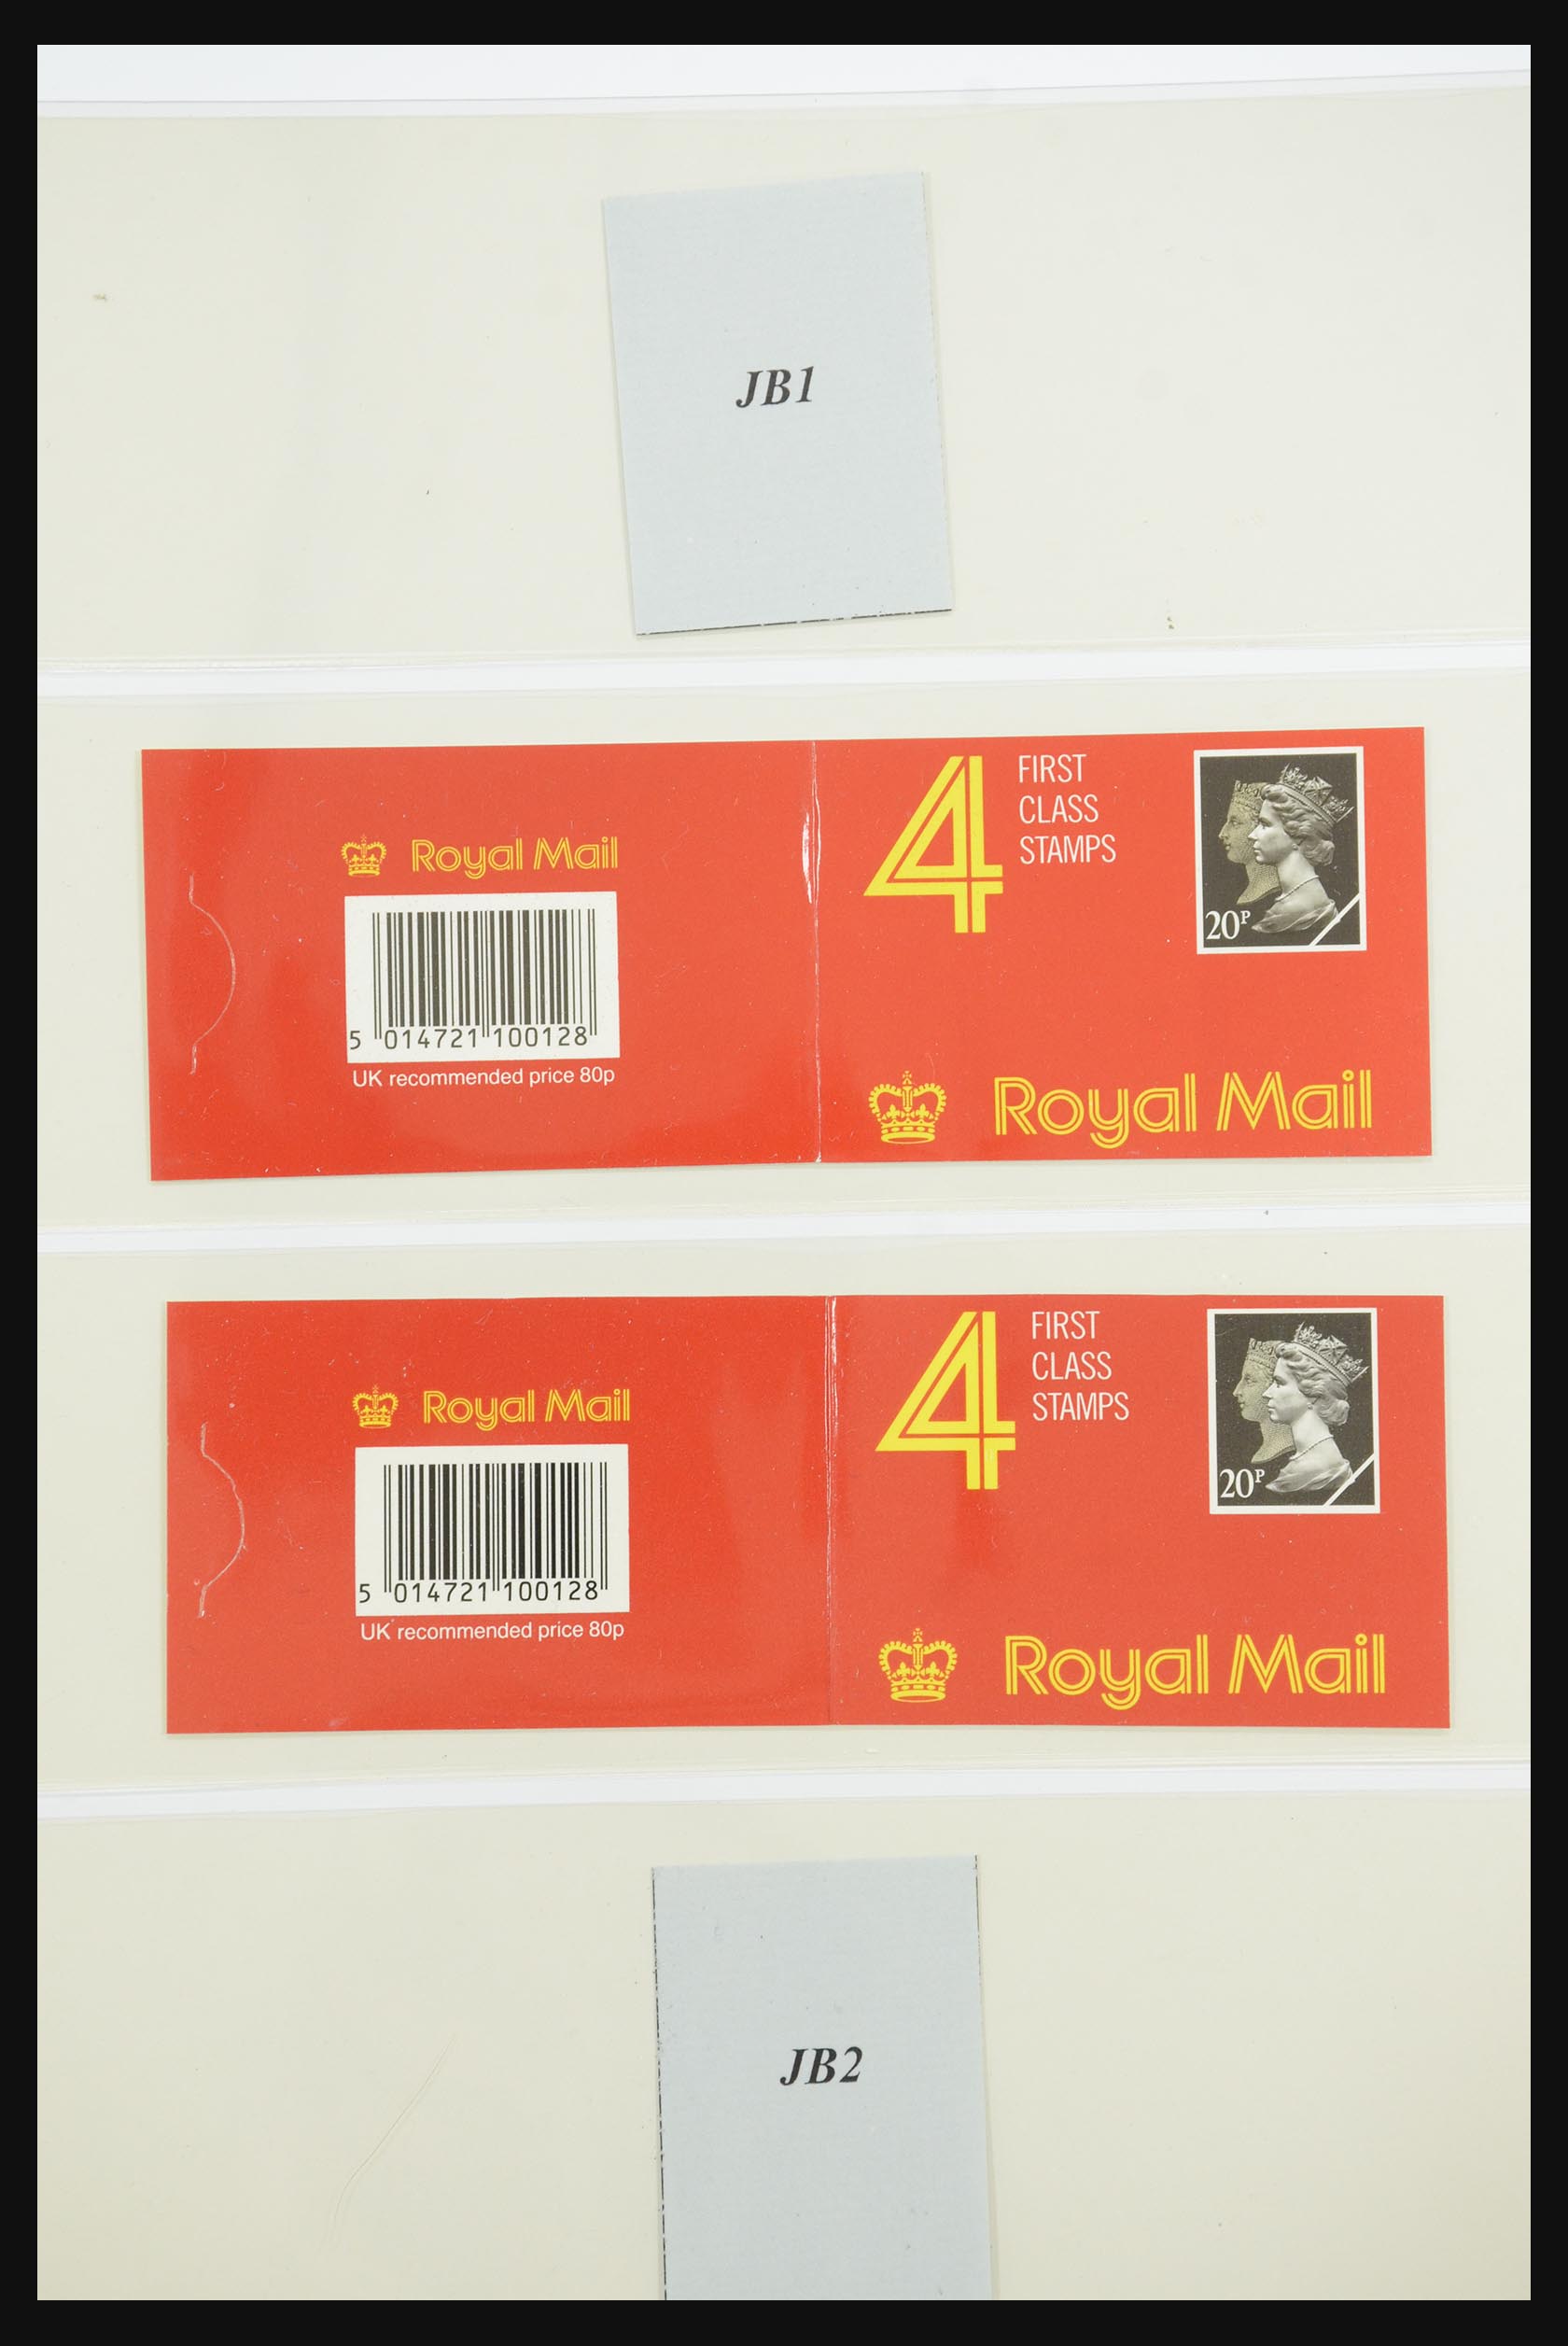 31960 181 - 31960 Engeland postzegelboekjes 1989-2000.